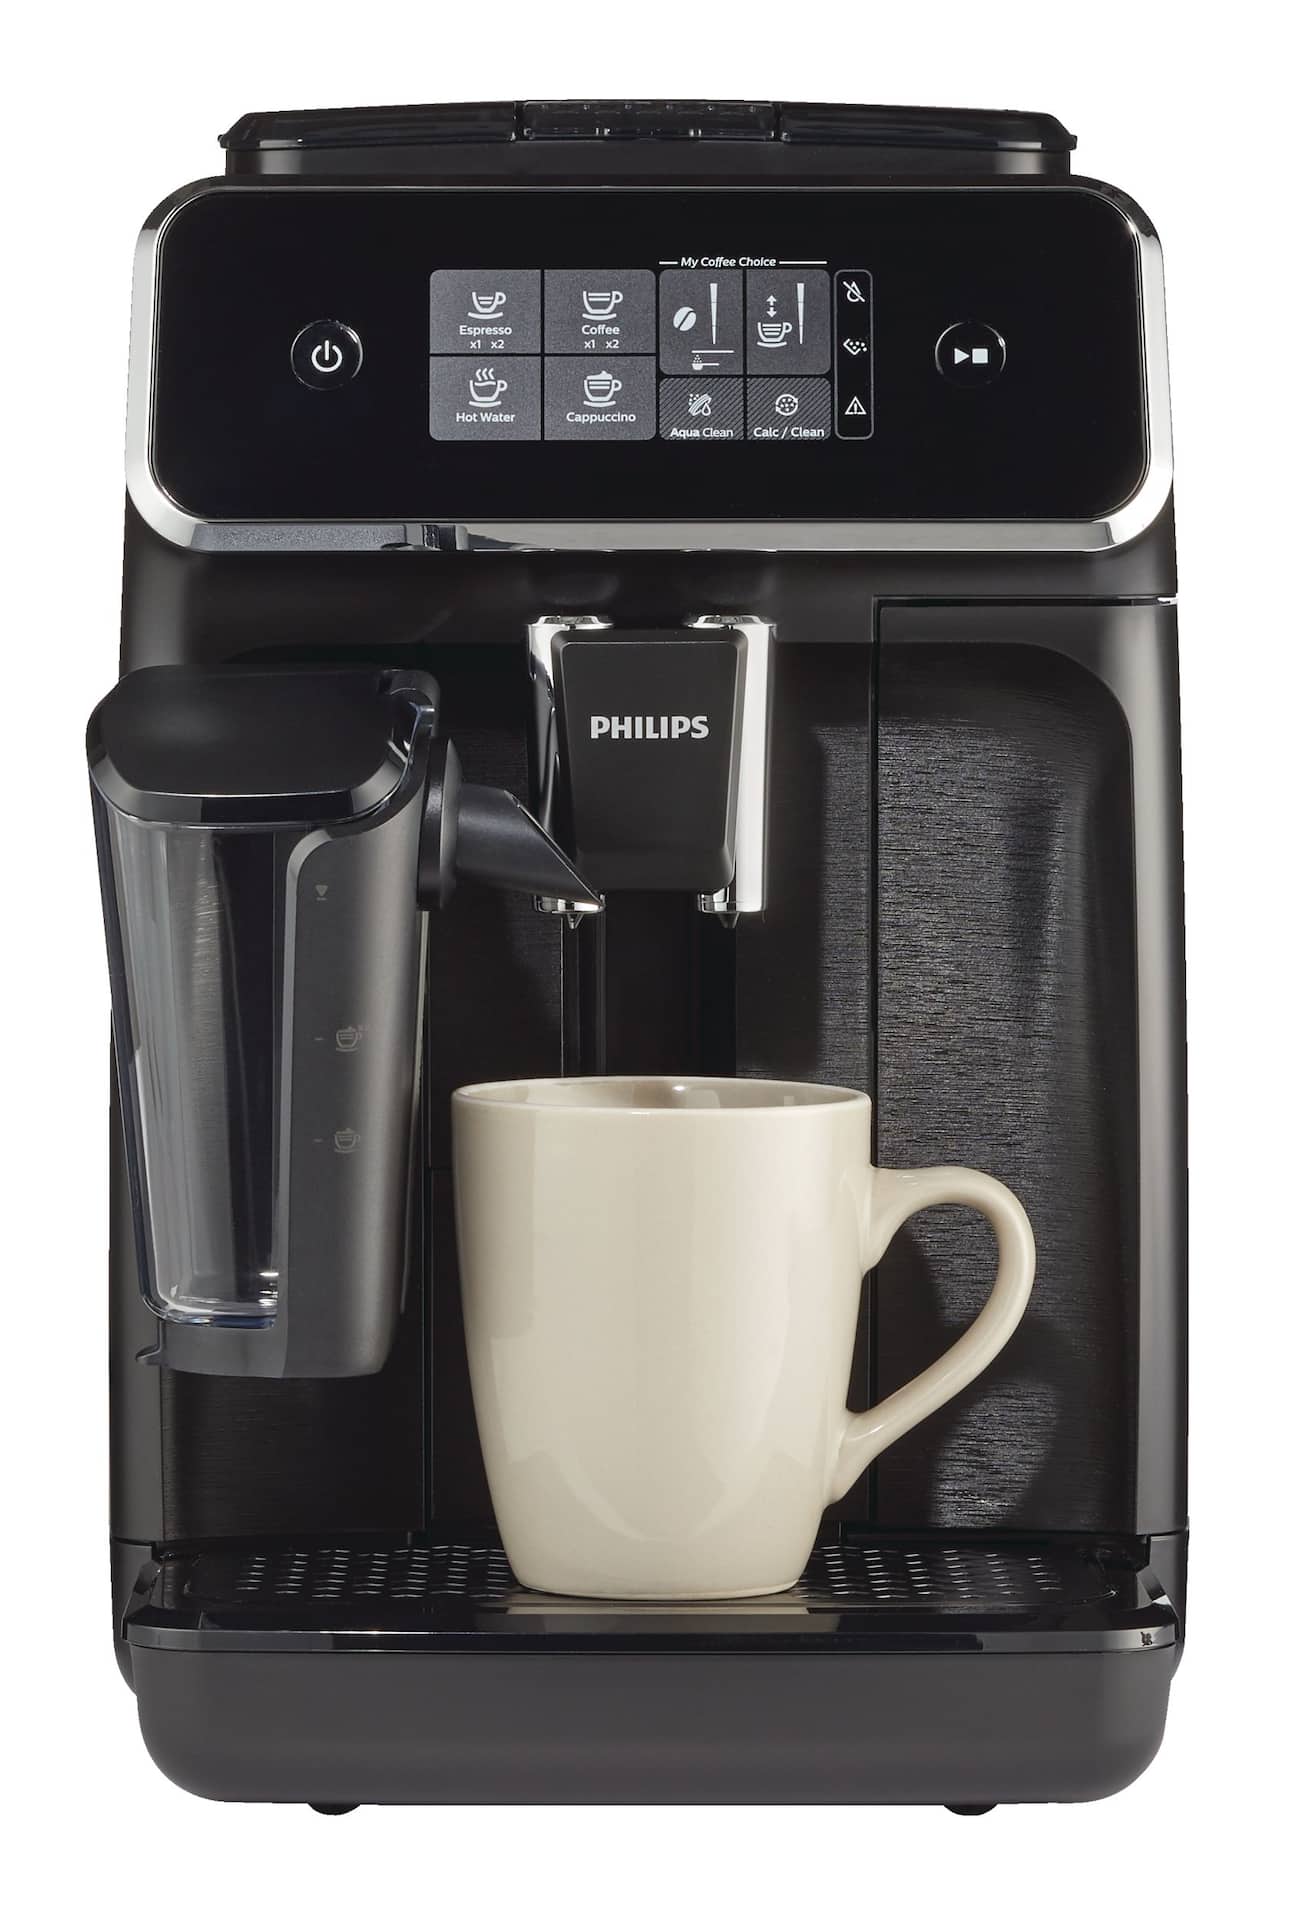  Philips Graisse De Lubrification Machine À Café